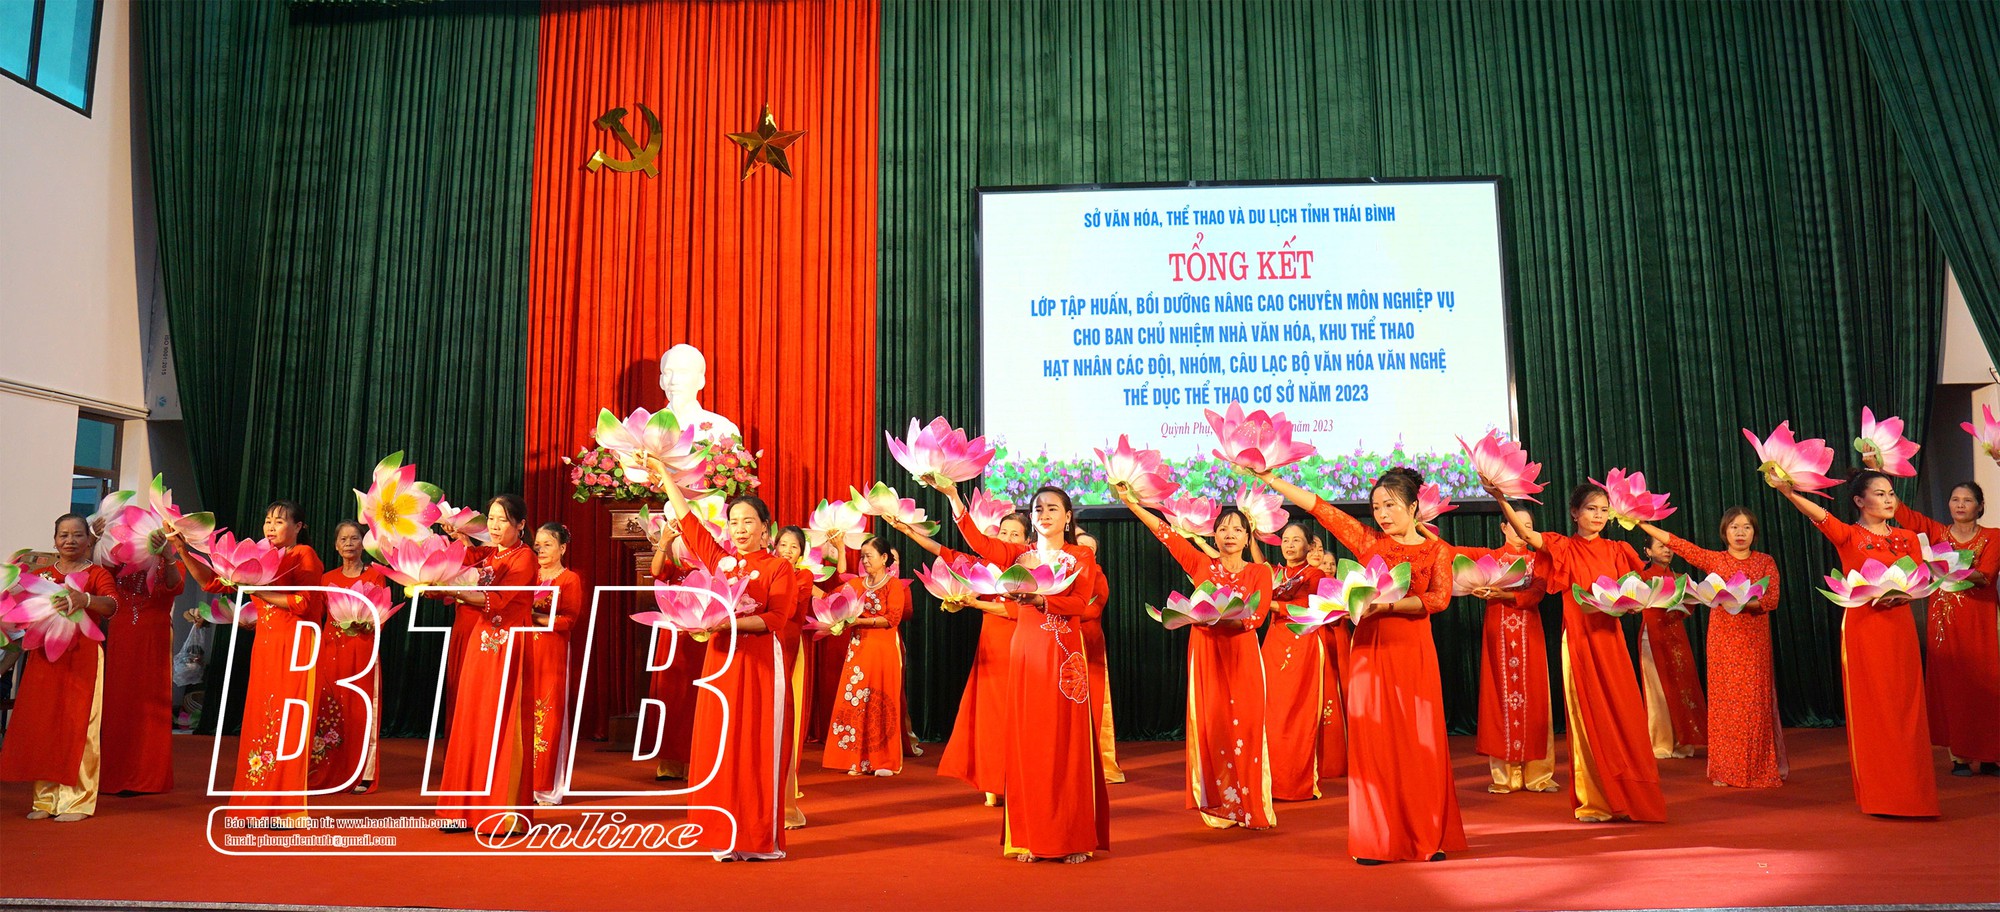 Thái Bình: Bồi dưỡng nâng cao nghiệp vụ cho 400 cán bộ văn hóa cơ sở - Ảnh 2.